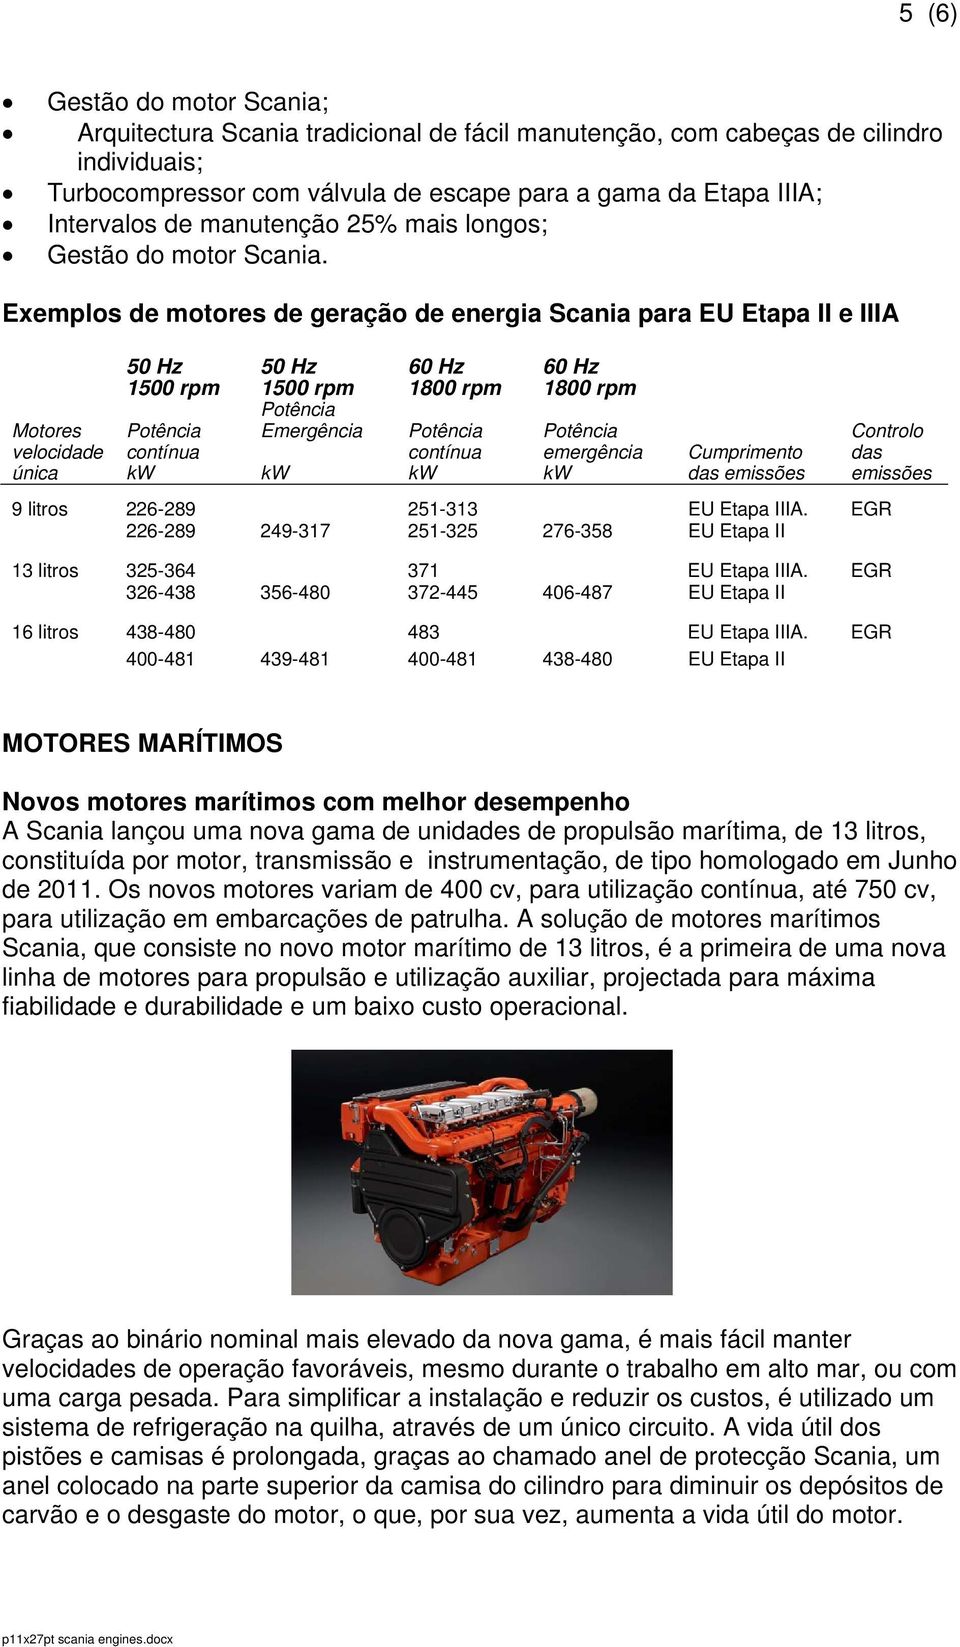 Exemplos de motores de geração de energia Scania para EU Etapa II e IIIA Motores velocidade única 50 Hz 1500 rpm contínua 50 Hz 1500 rpm Emergência 60 Hz 1800 rpm contínua 60 Hz 1800 rpm emergência